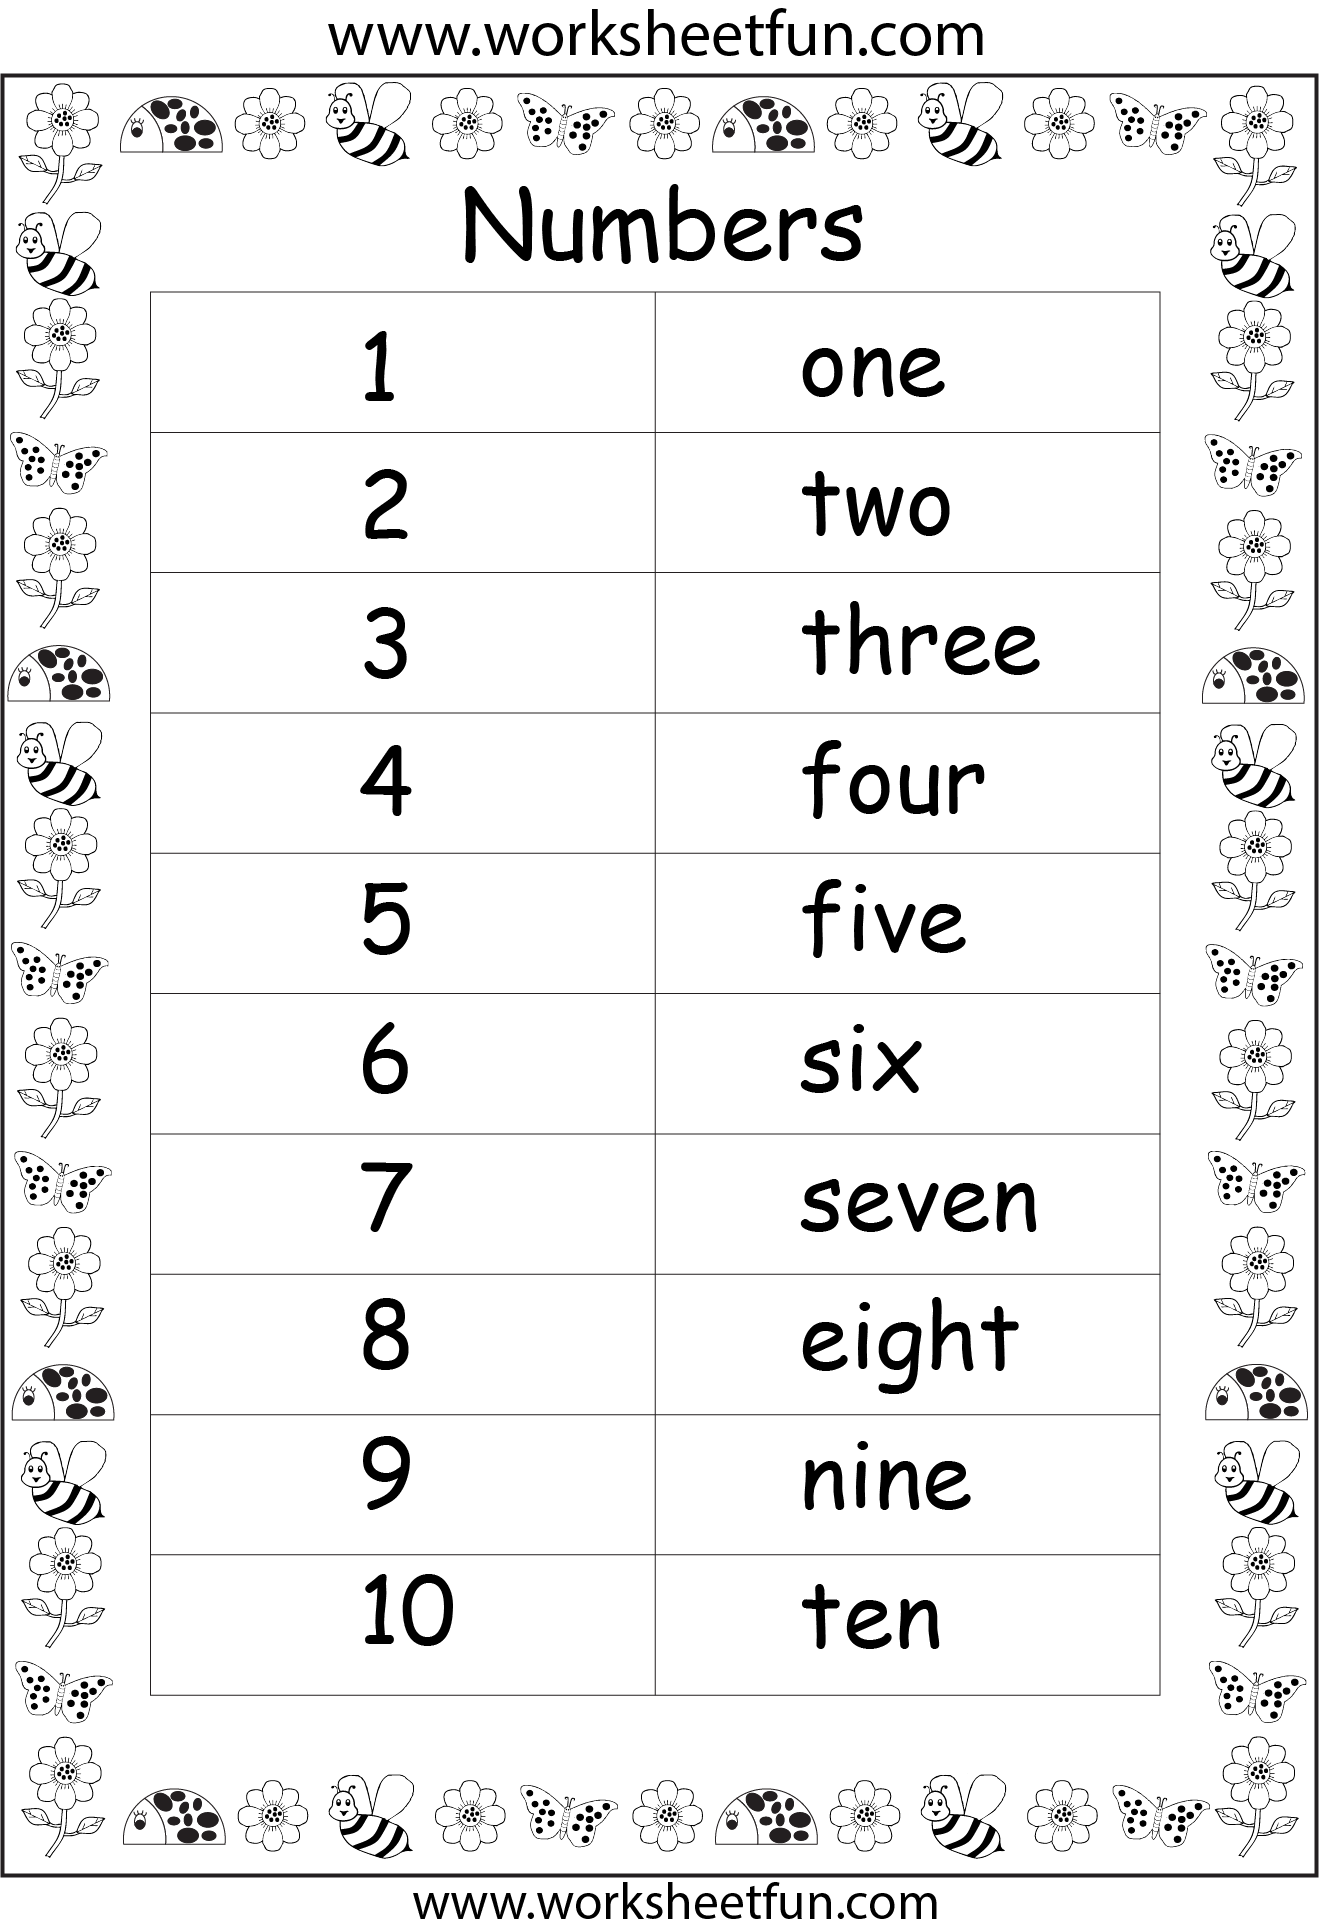 number-names-worksheet-number-words-worksheets-number-words-worksheets